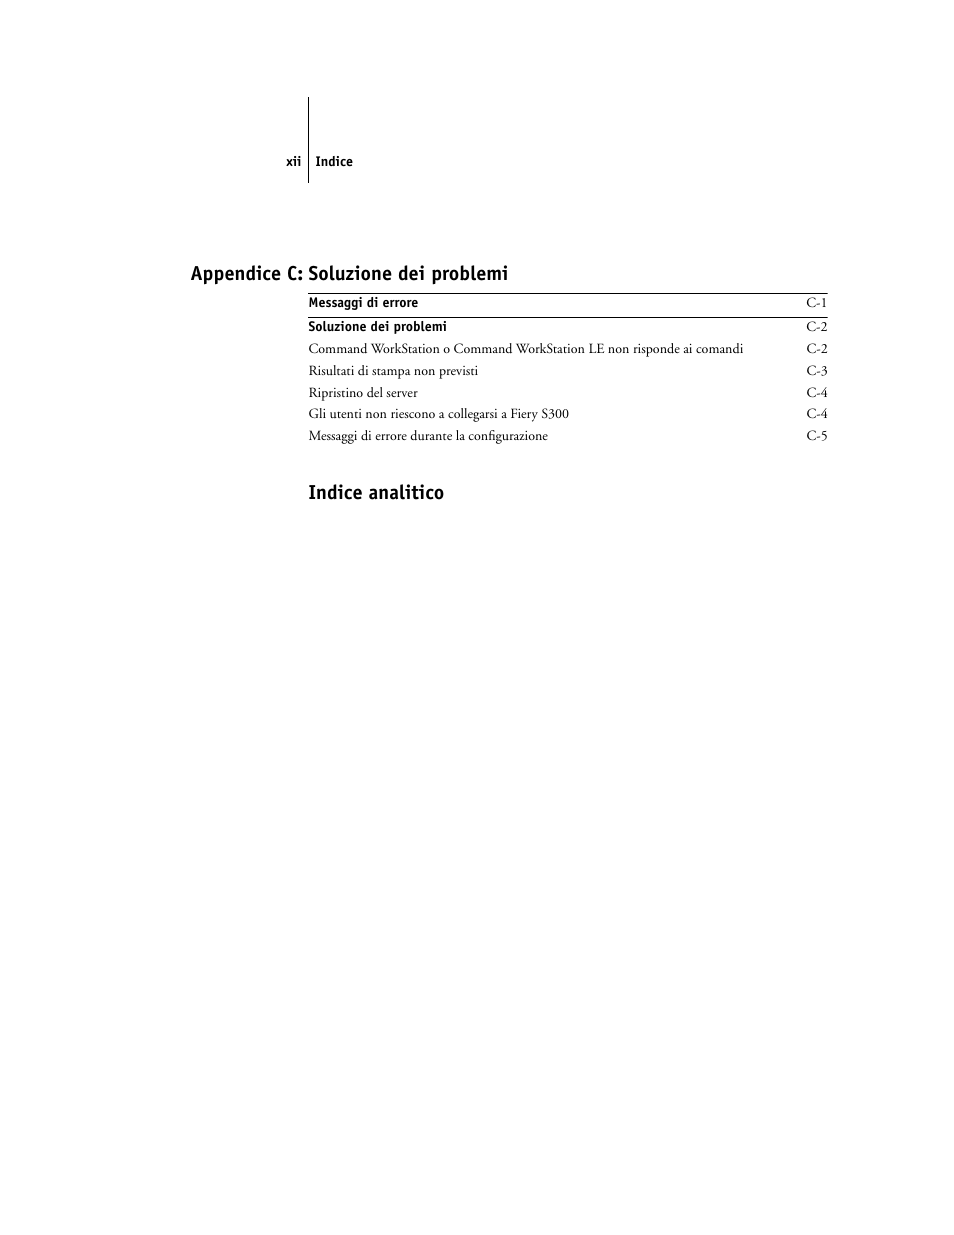 Appendice c: soluzione dei problemi, Indice analitico | Konica Minolta CN5001Pro Manuale d'uso | Pagina 12 / 216